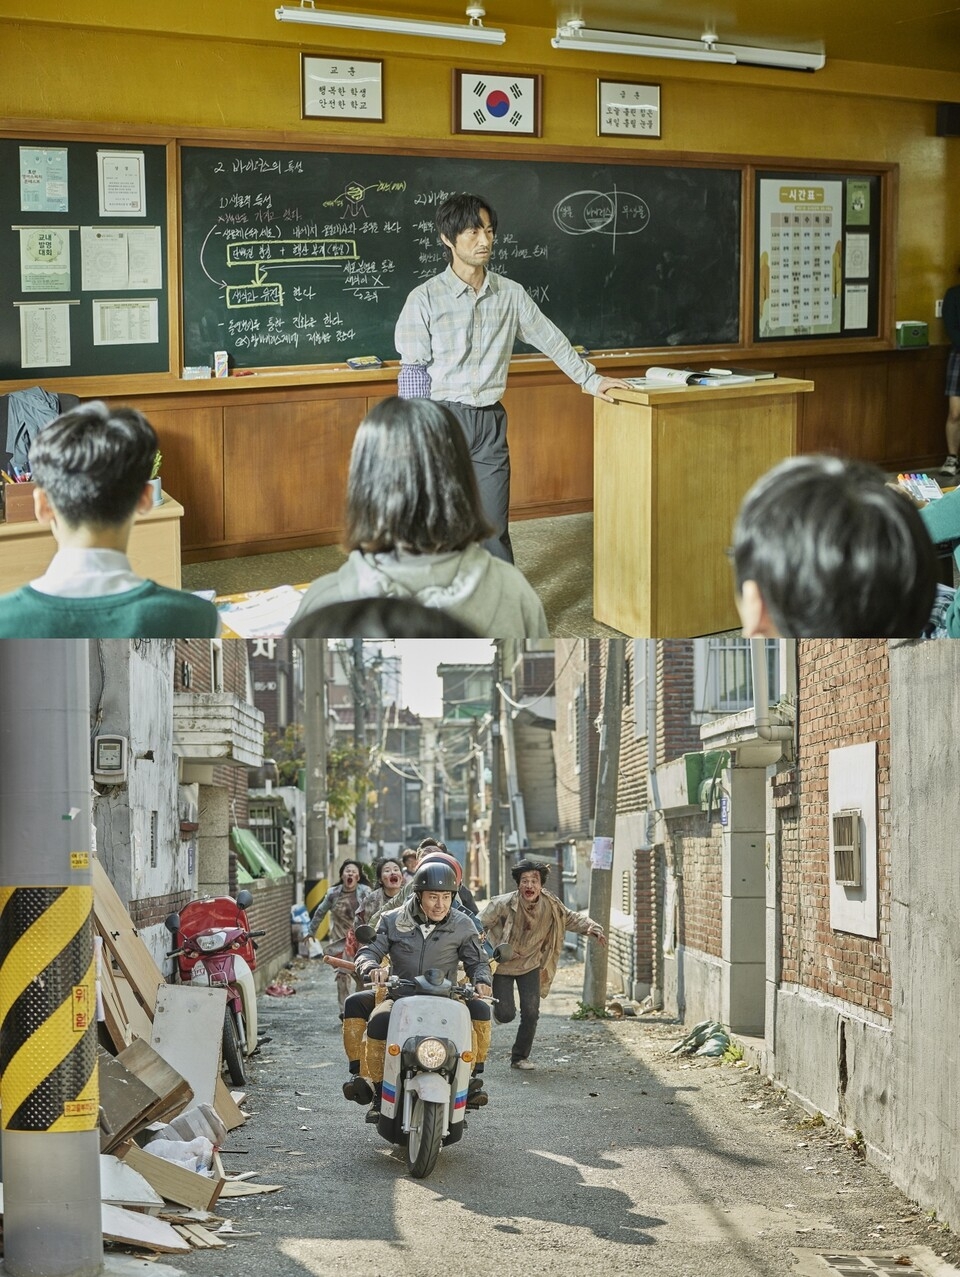 金炳哲飾演孝山高中的科學教師「李秉燦」／ 李奎炯則飾演調查殭屍病毒事件的刑警「宋在益」